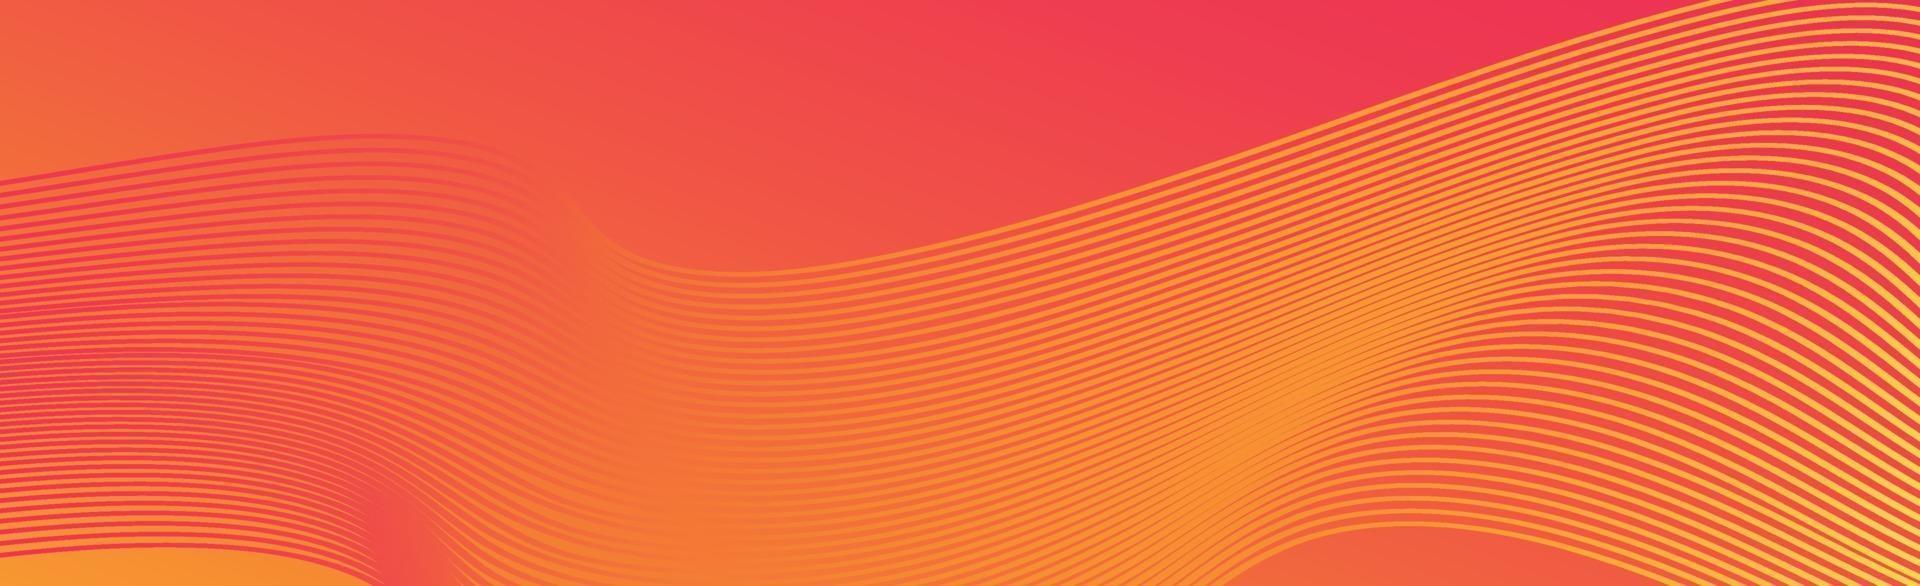 orange abstrakter Hintergrund mit Wellenlinien - Vektor